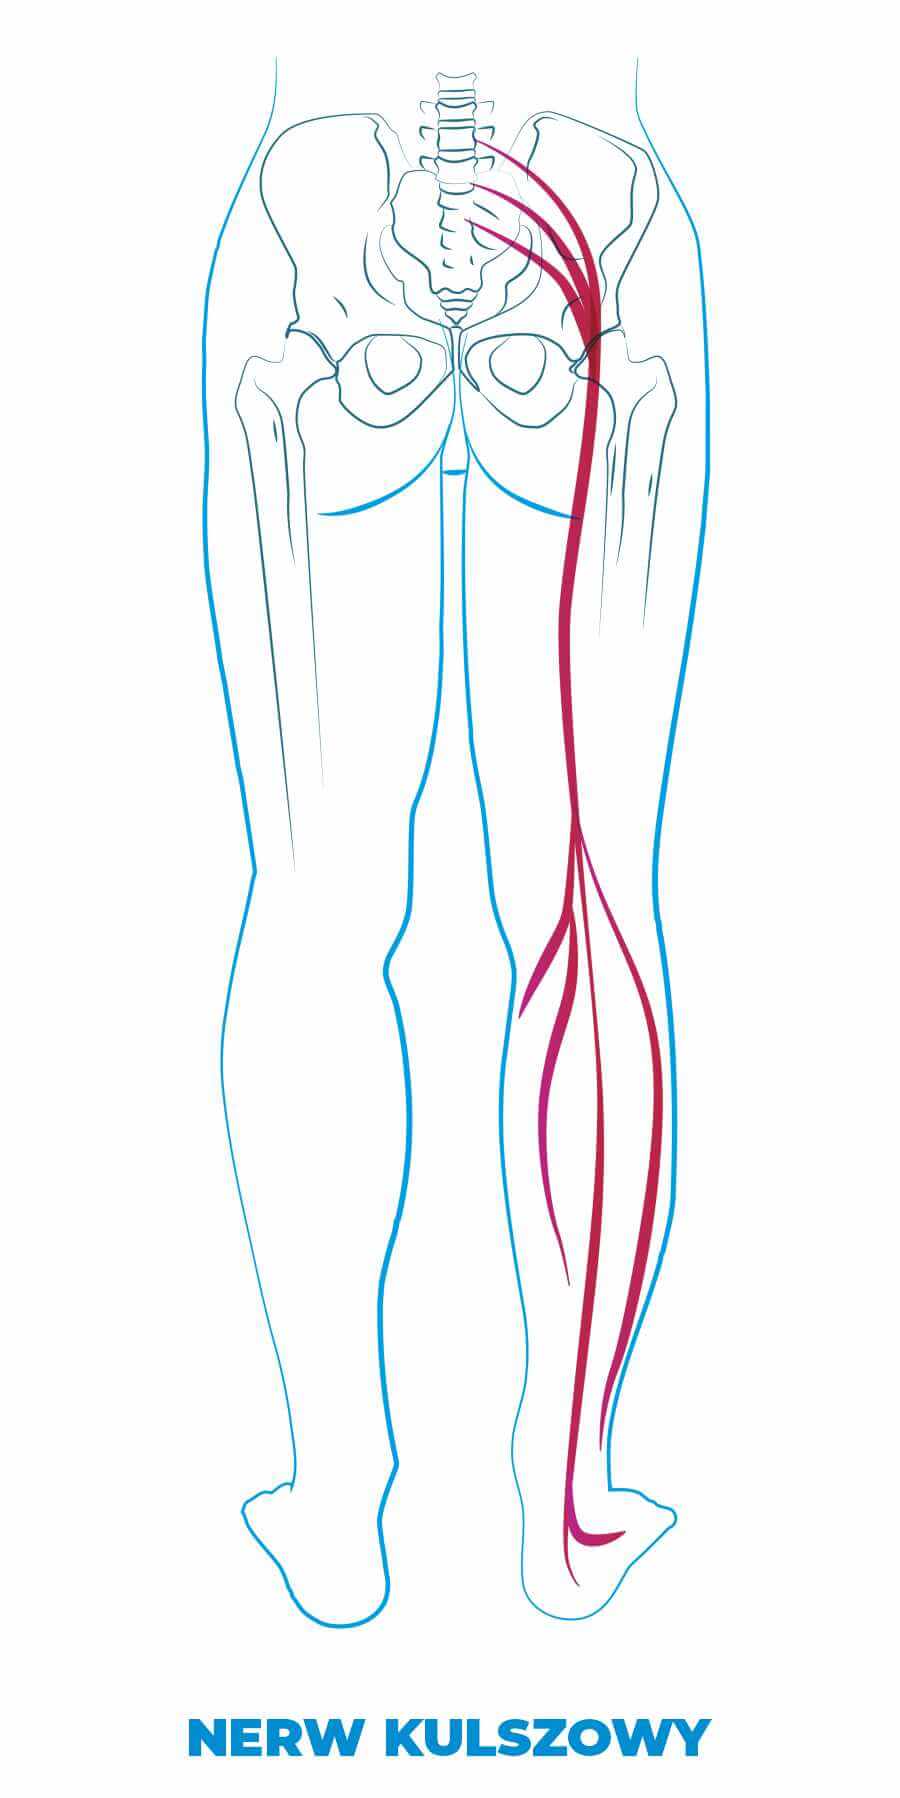 Rwa kulszowa, nerw kulszowy, objawy rwy kulszowej, ból nogi